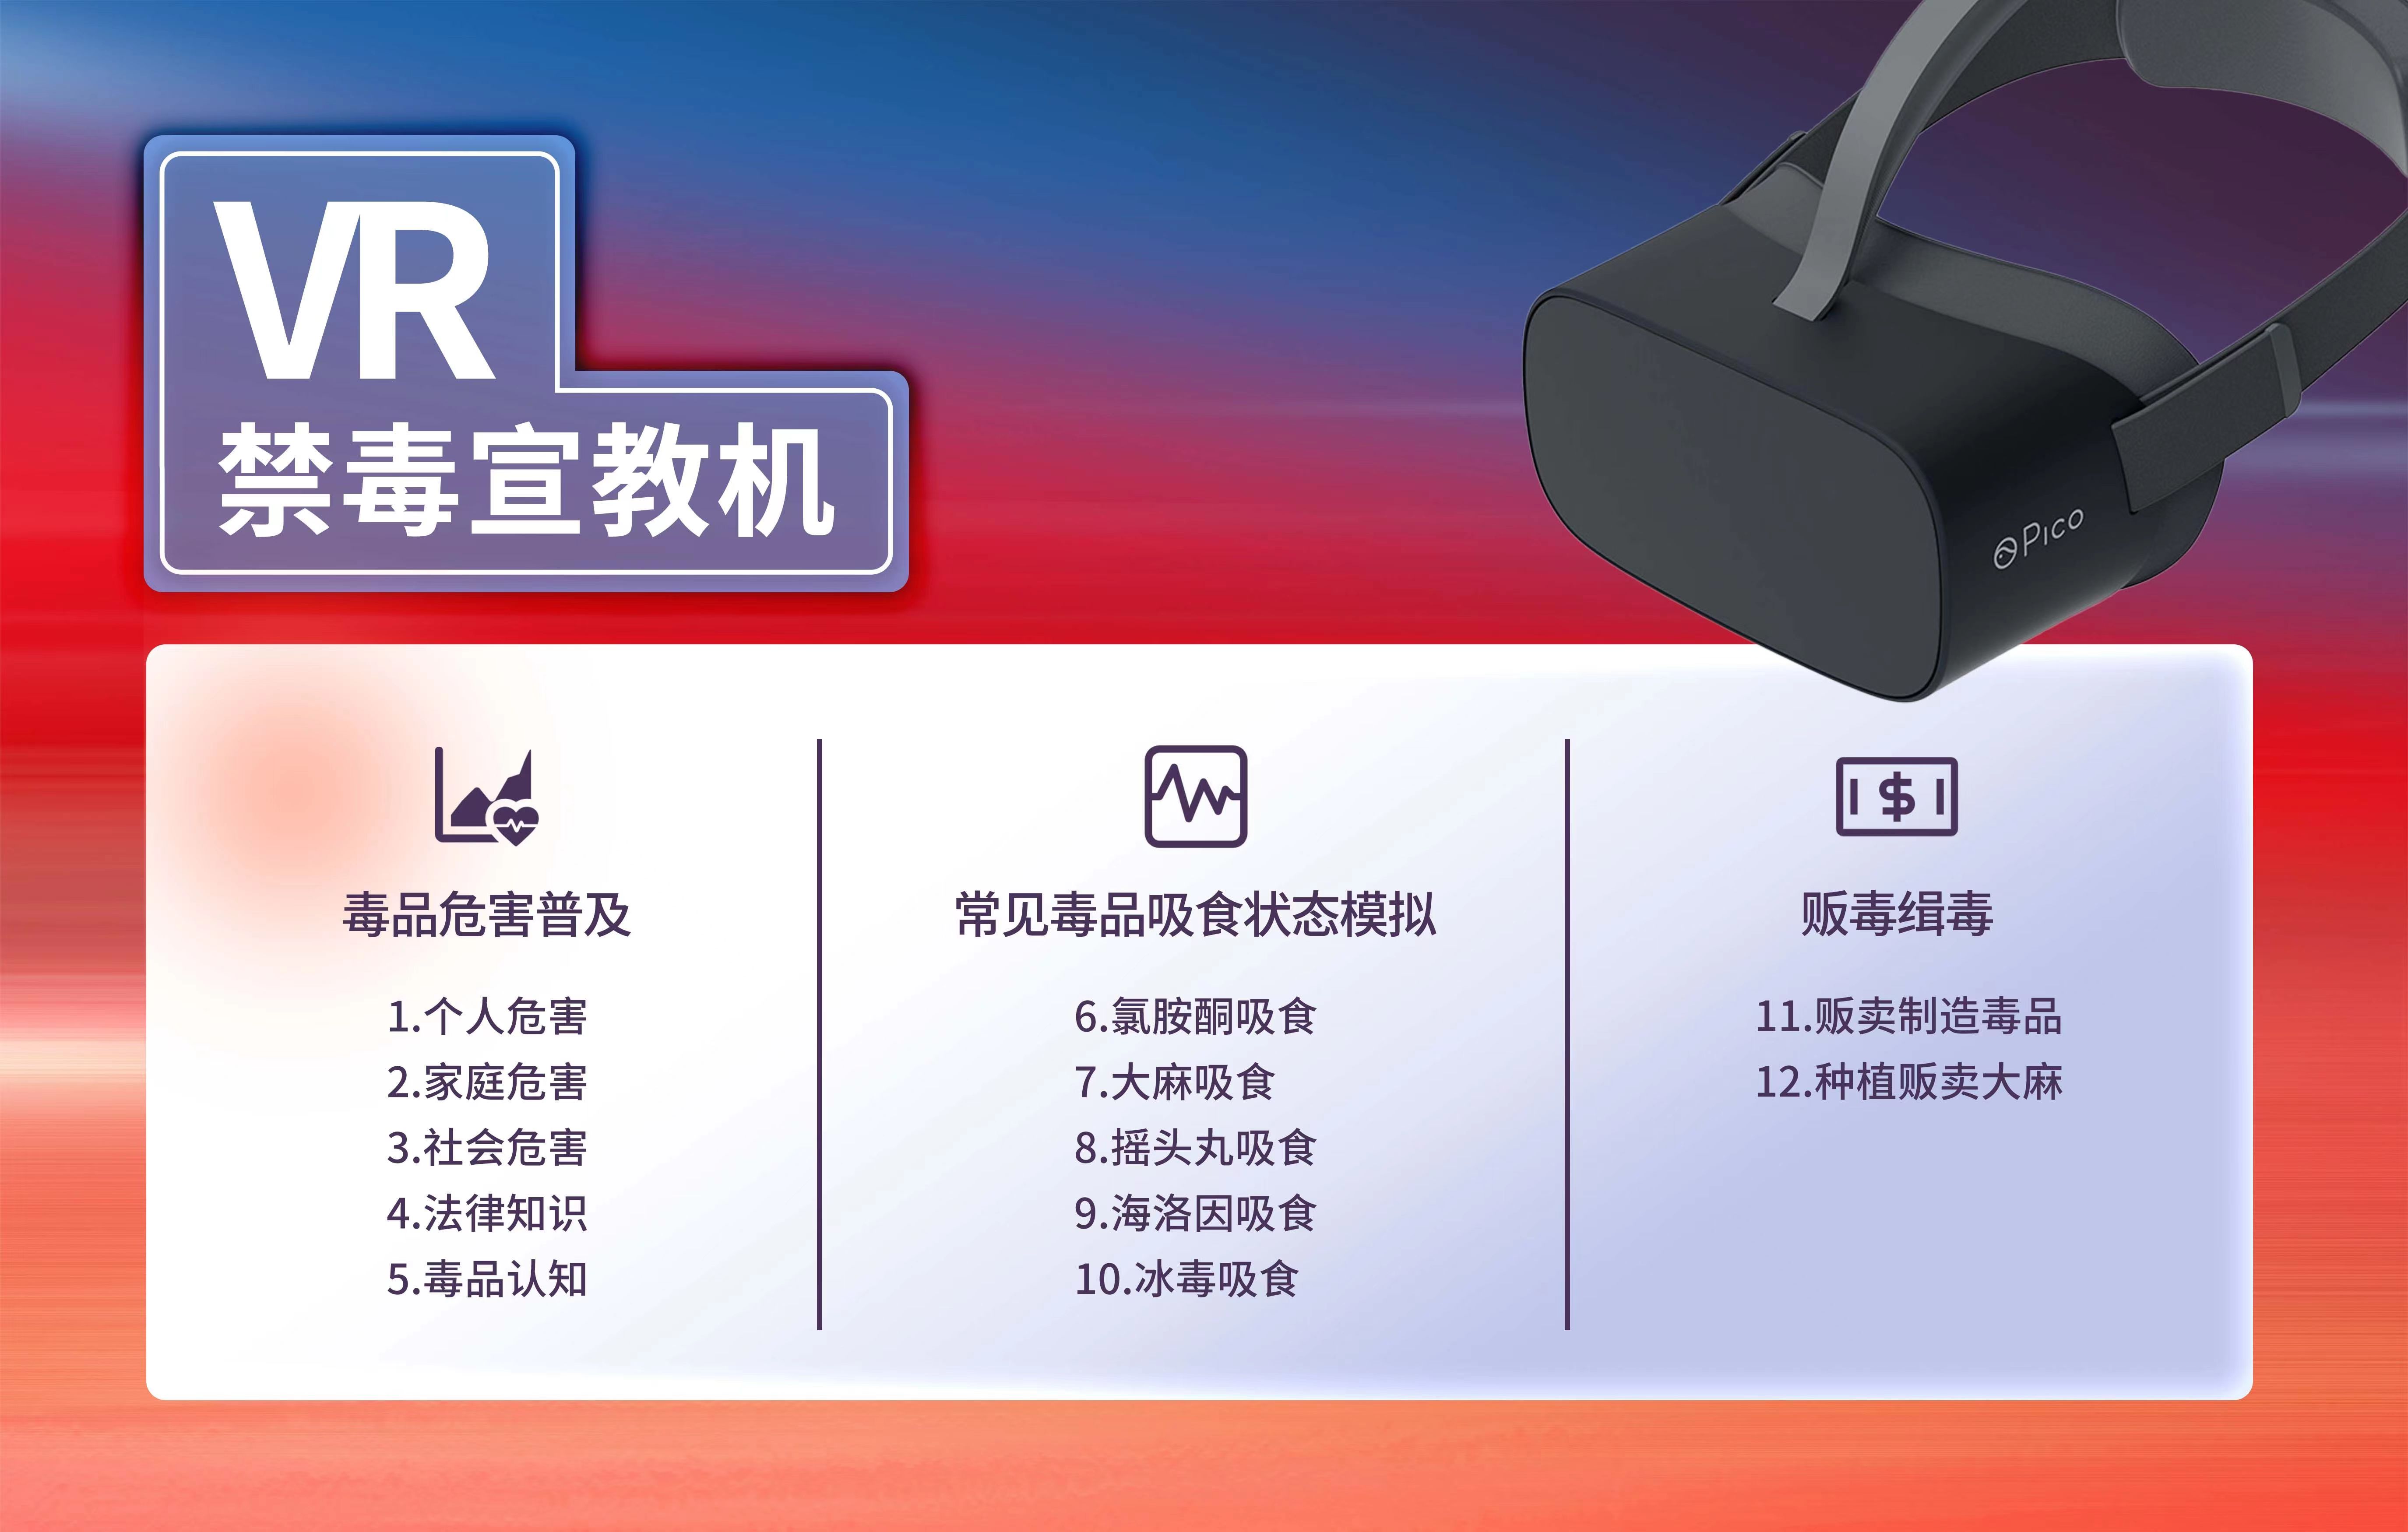 VR禁毒学习机,VR禁毒软件,vr禁毒展厅,禁毒VR体验设备